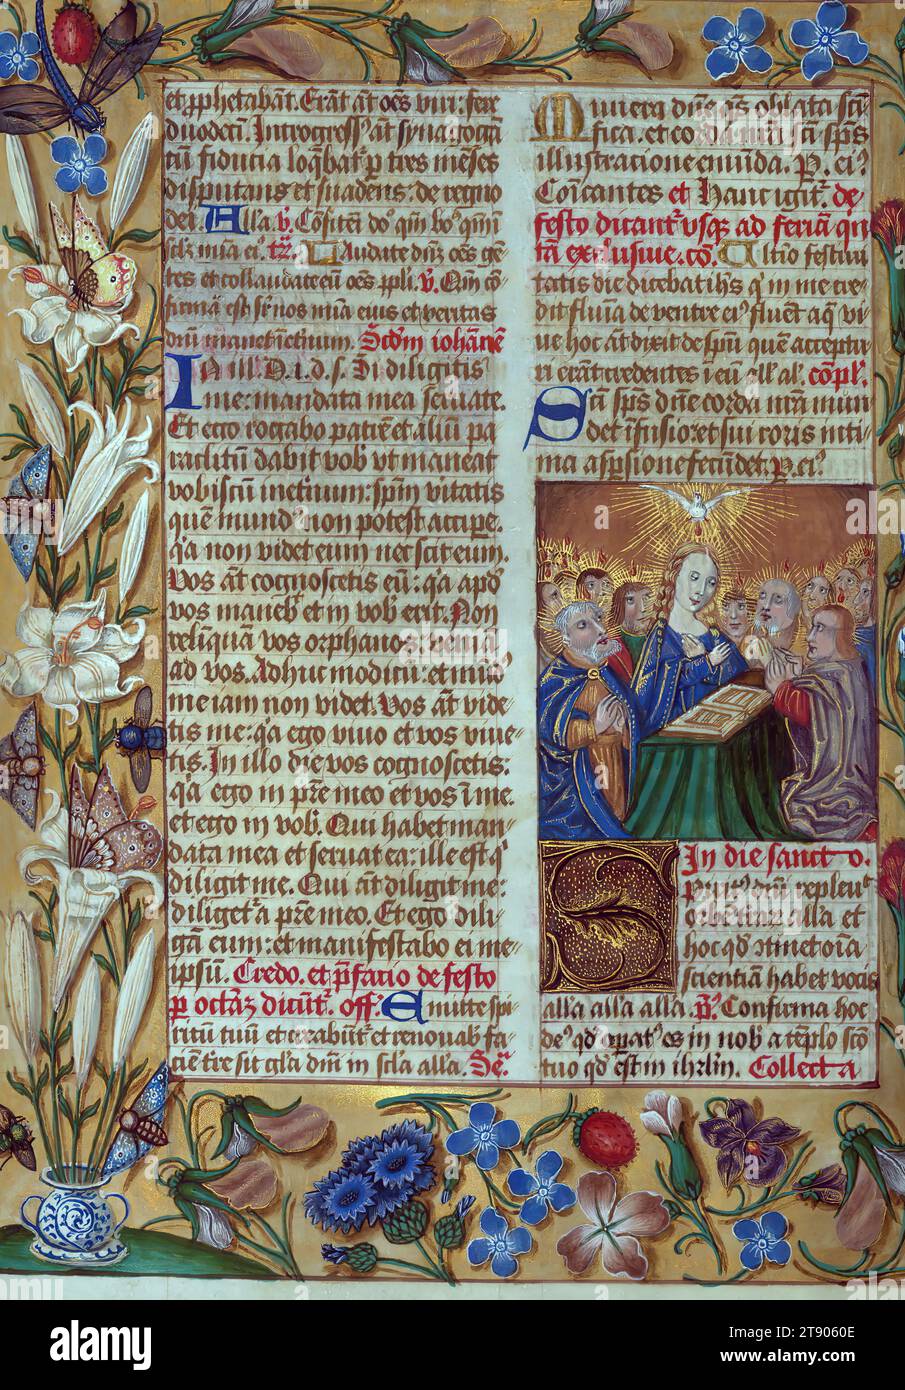 Masters of the Dark Eyes Missal, Inicial S con Pentecostés, este Misal latino fue escrito en Utrecht, Países Bajos, ca. 1500 Retratos de los propietarios originales, cuyos nombres no están registrados, van acompañados de heráldica que indica que el marido era de la familia de San Férréol de Delfiné; la esposa era de la familia Cambronne de Ponthieu. El manuscrito está fuertemente iluminado con más de cincuenta iniciales y miniaturas historiadas por un grupo de artistas conocidos como los 'Maestros de los Ojos Oscuros Foto de stock